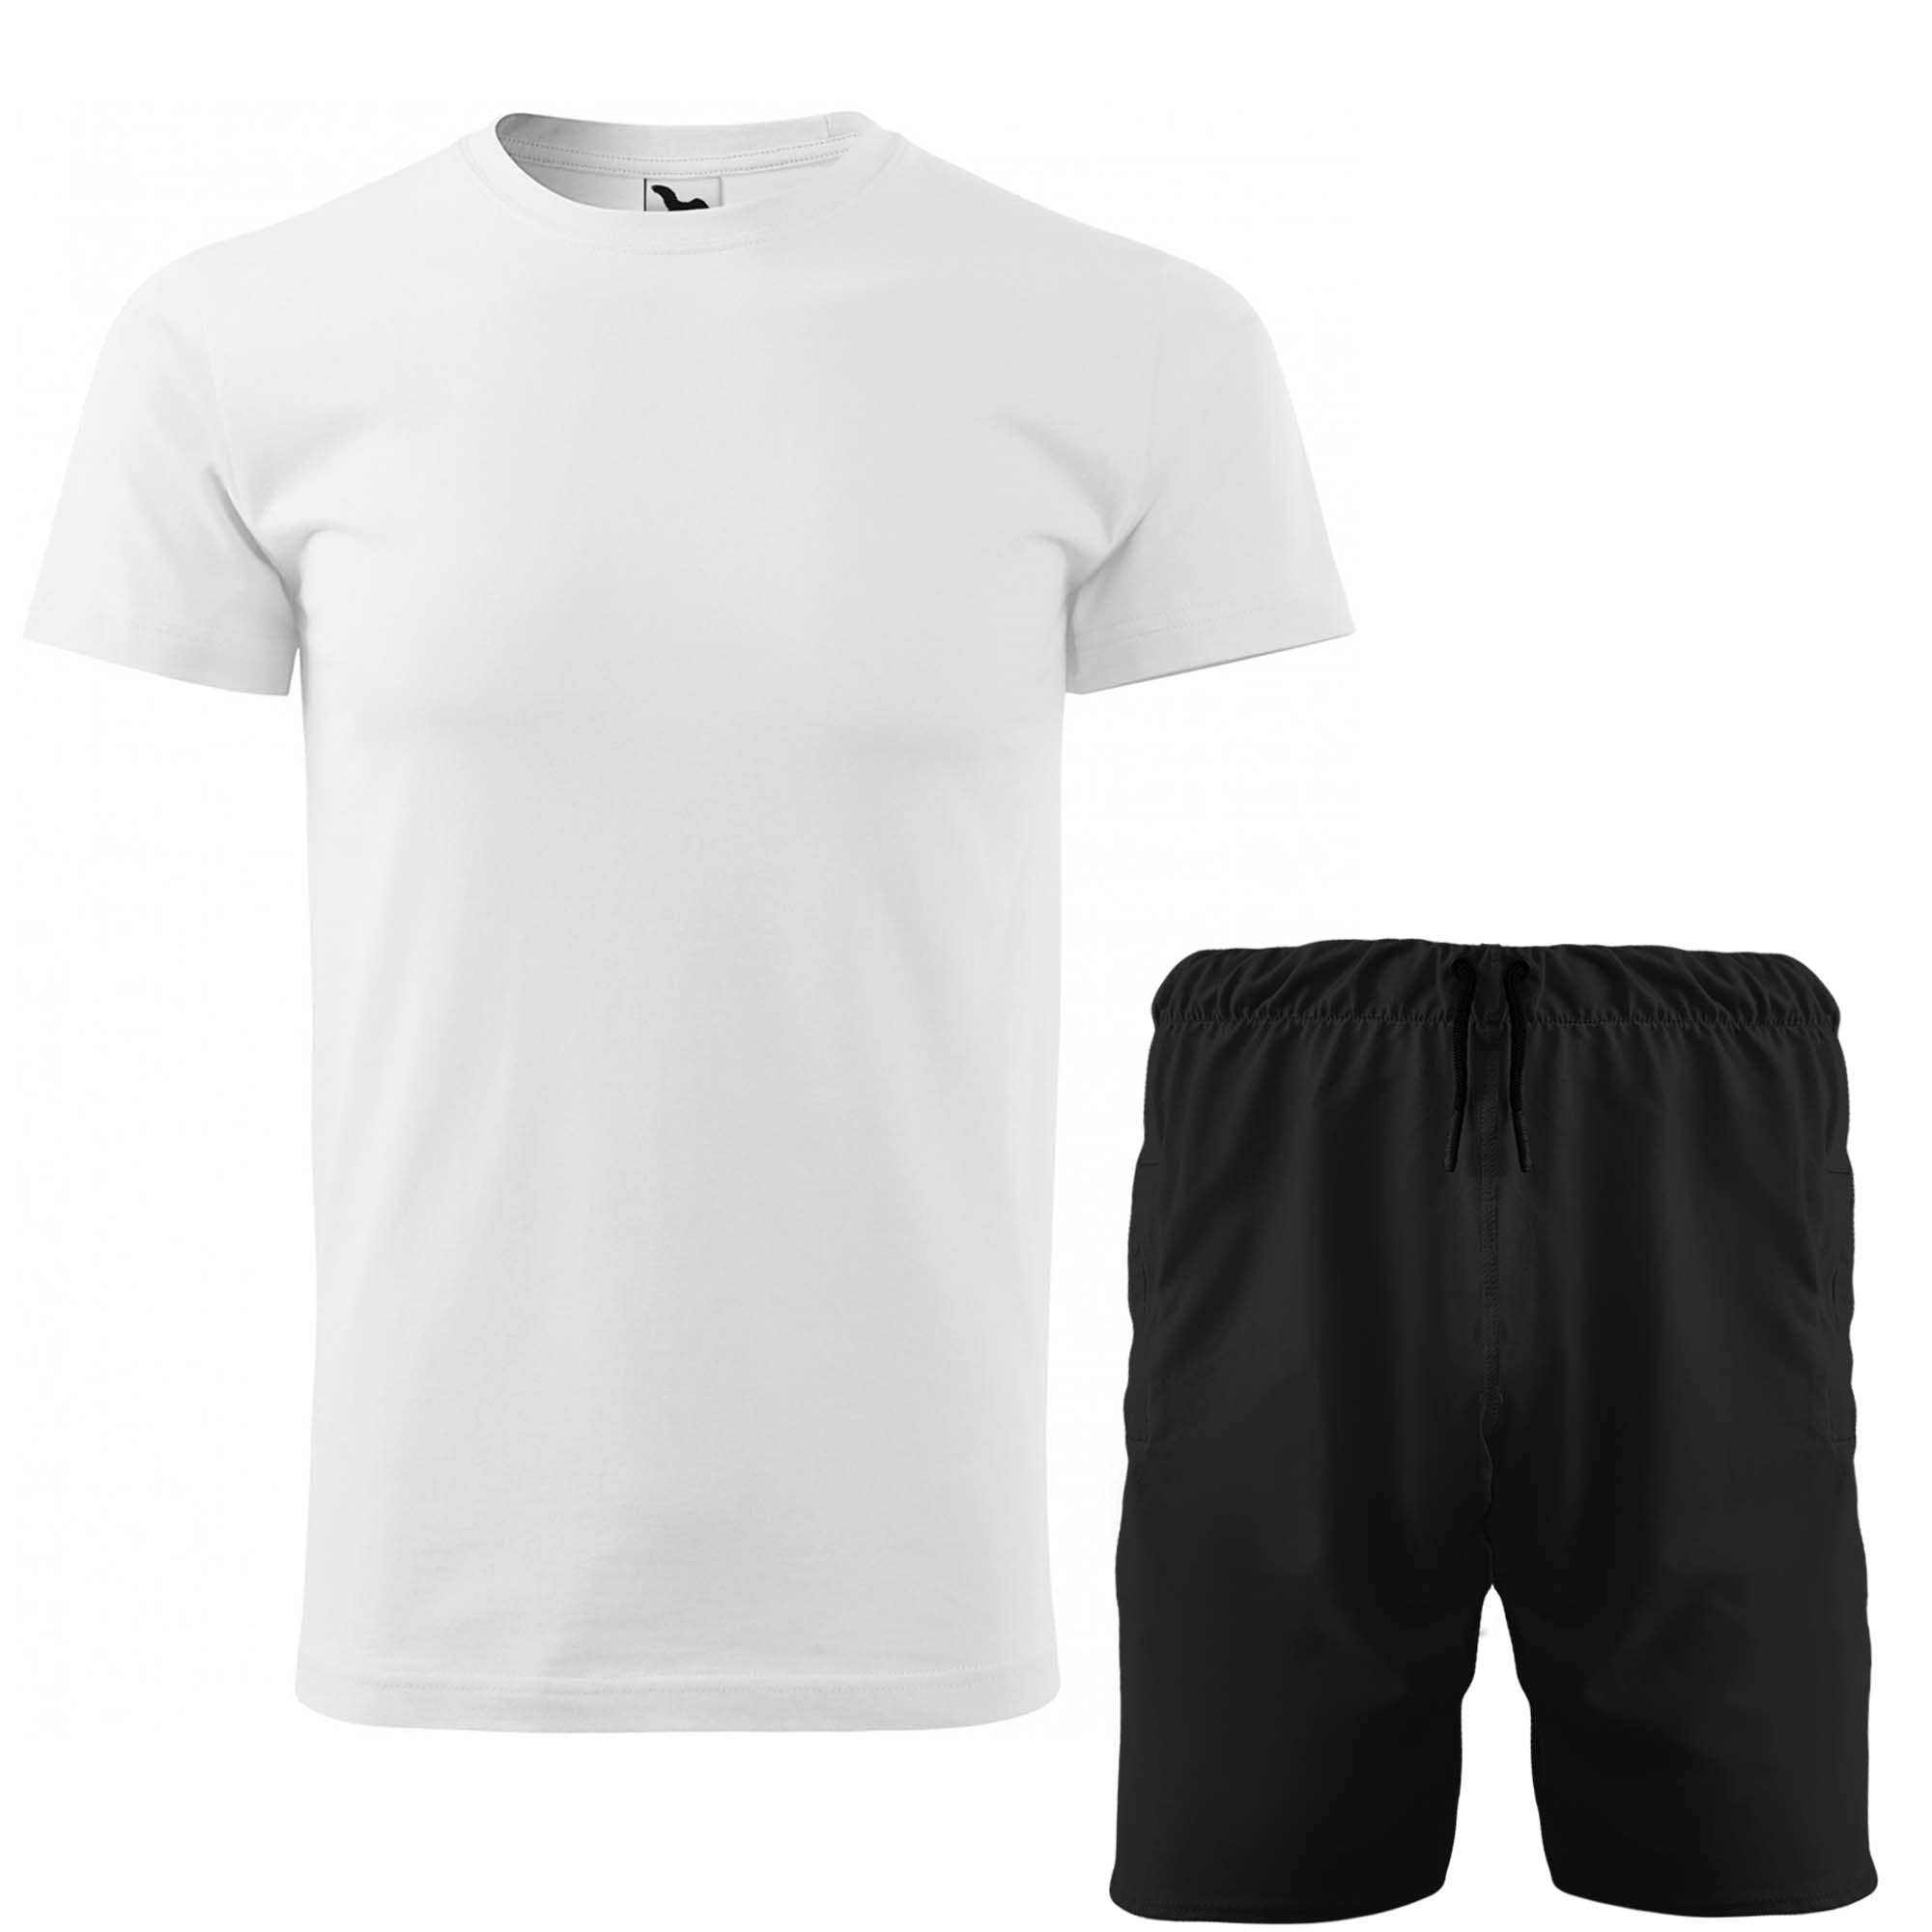 ست تی شرت و شلوارک مردانه مدل 14010719 رنگ سفید